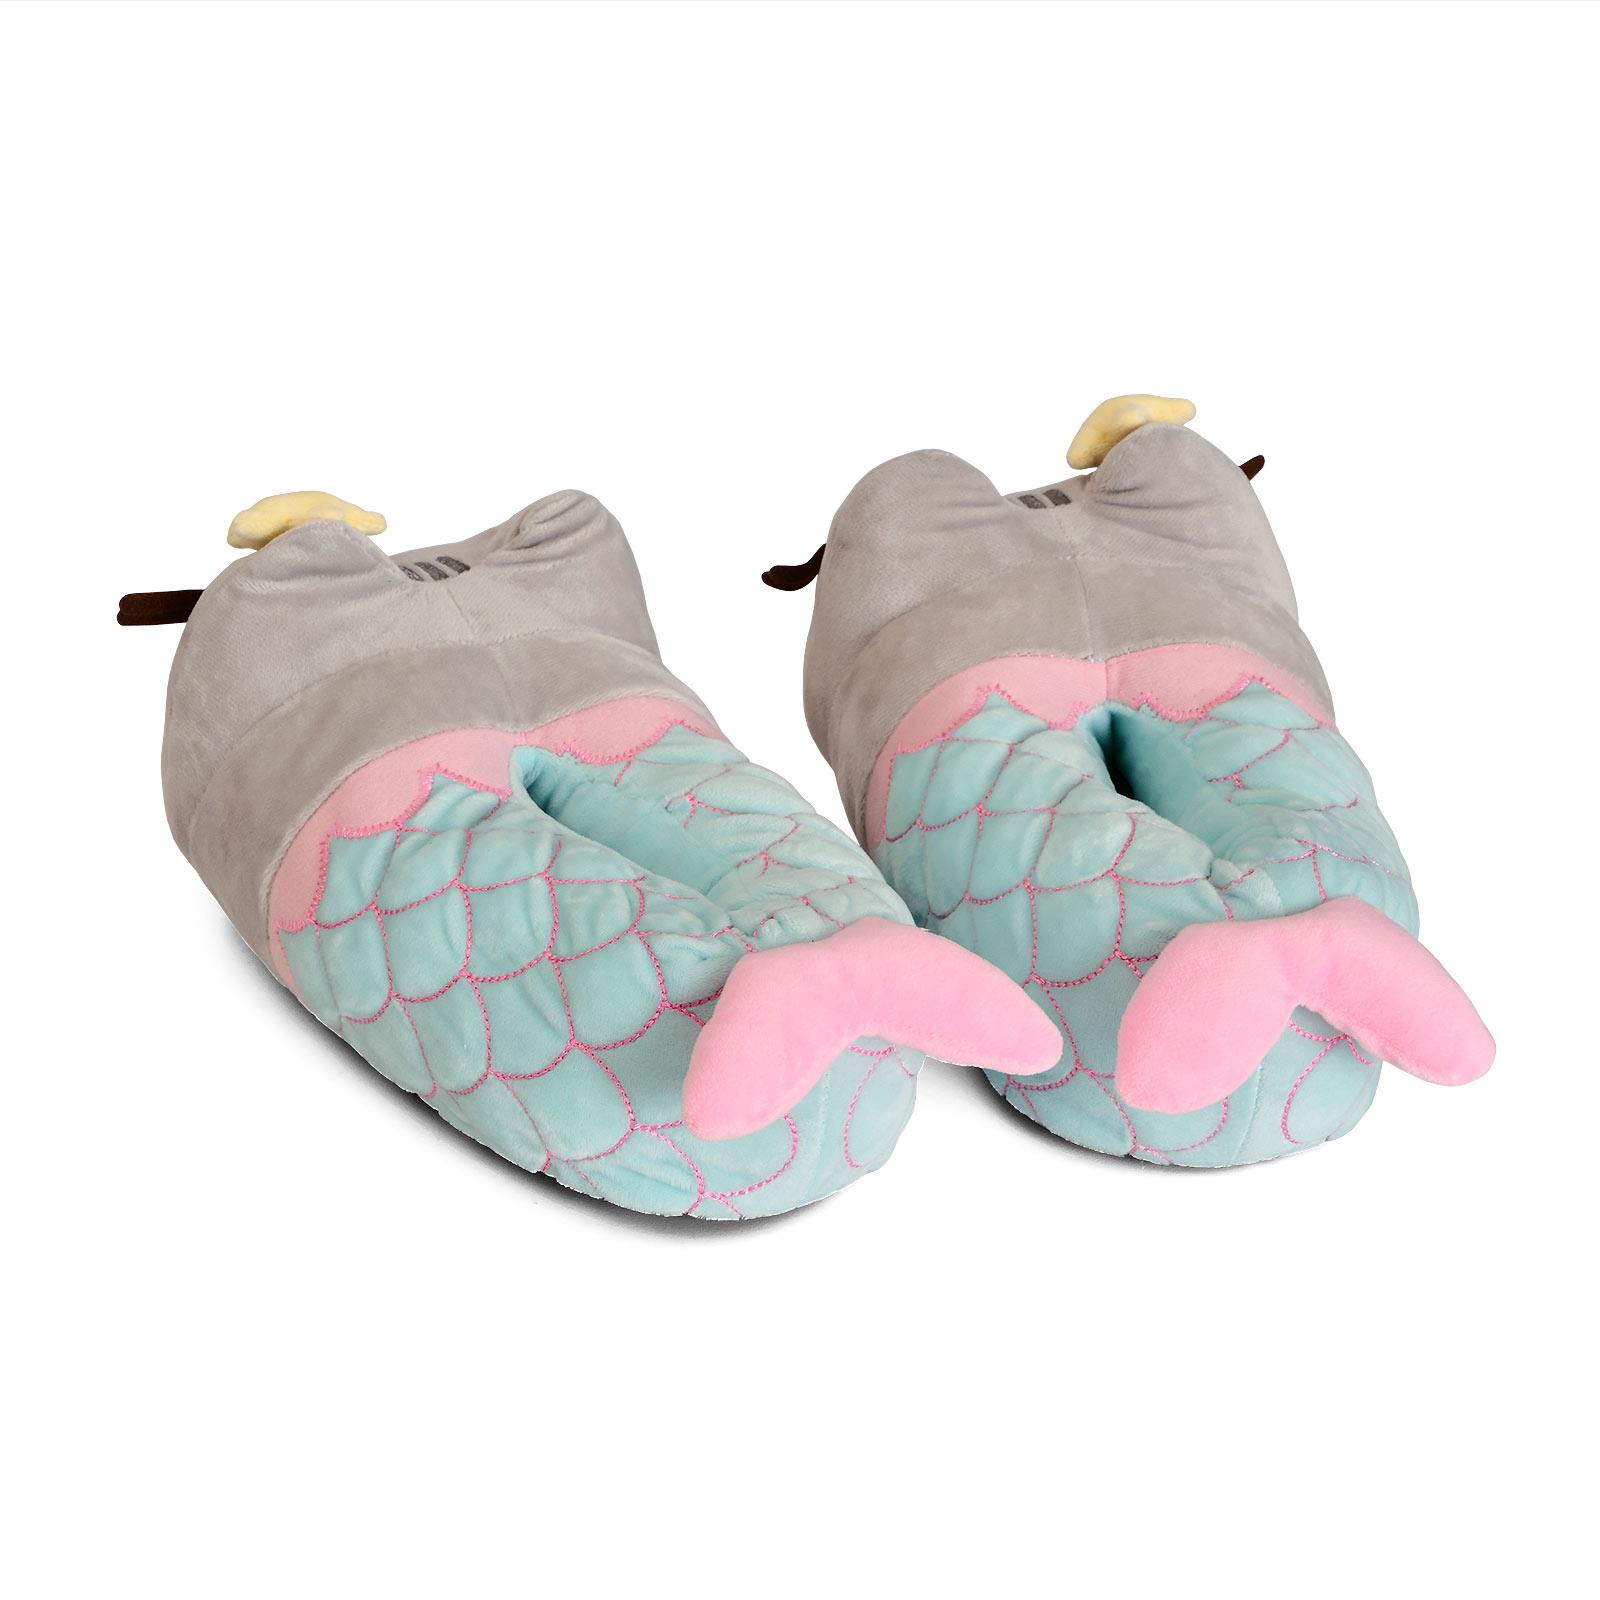 Pusheen - Plush Mermaid Slippers